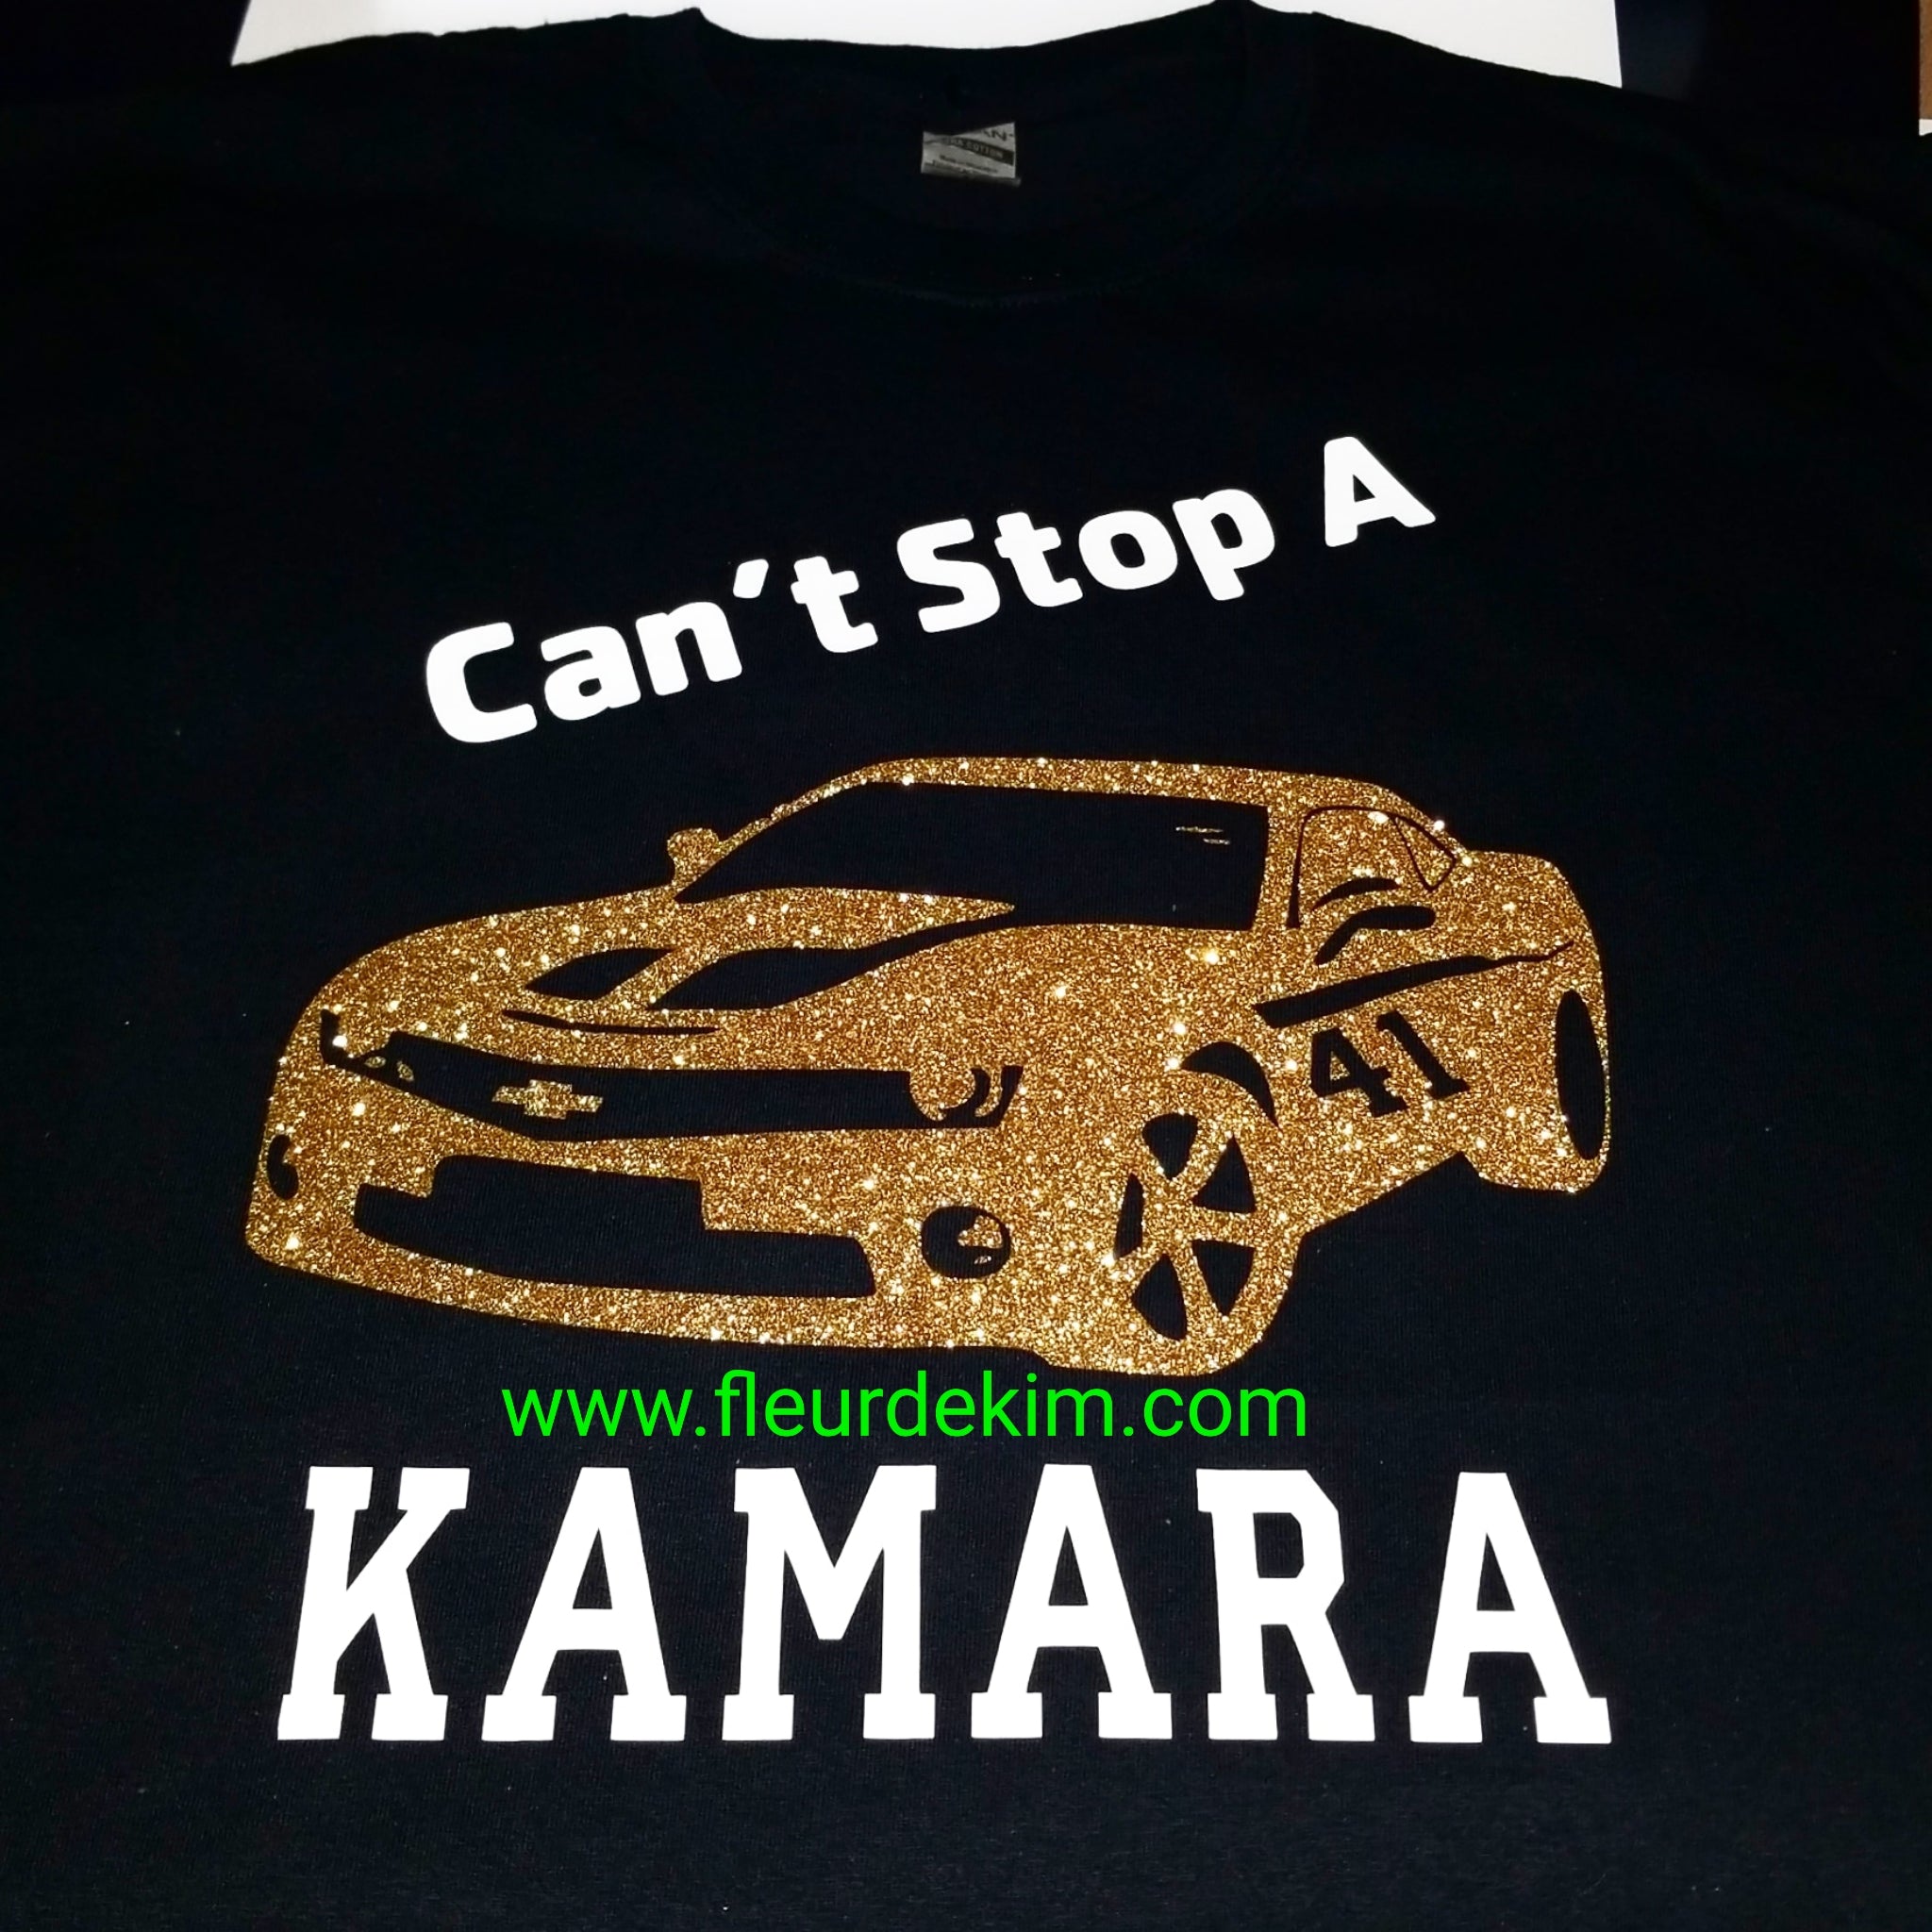 "Can't stop a Kamara" tshirt